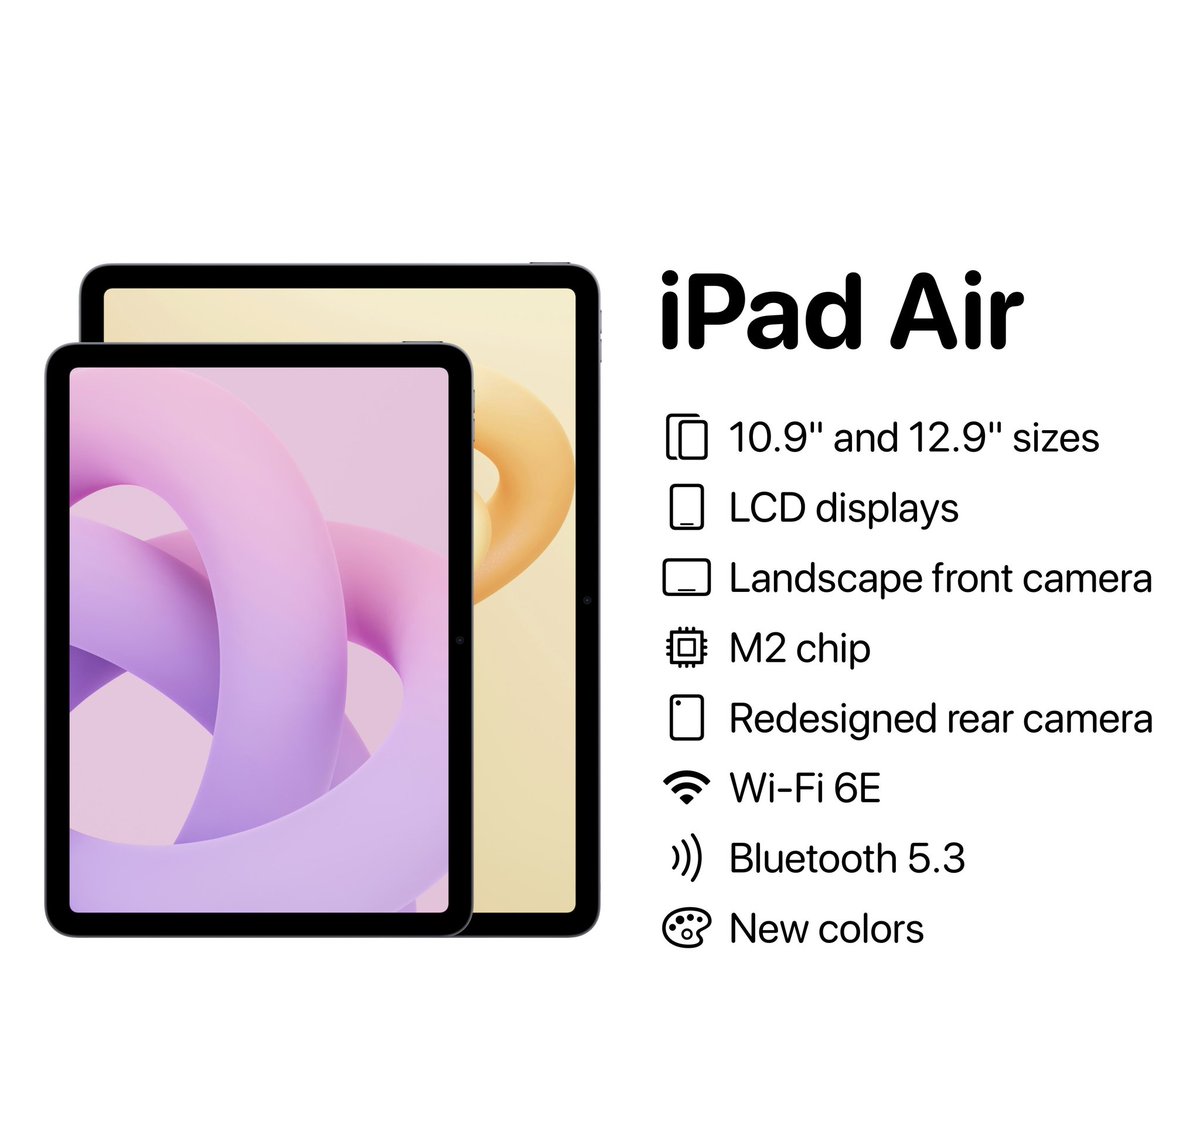 iPad Air specification Based on rumors
#apple #ipad #ipadAir #ios18